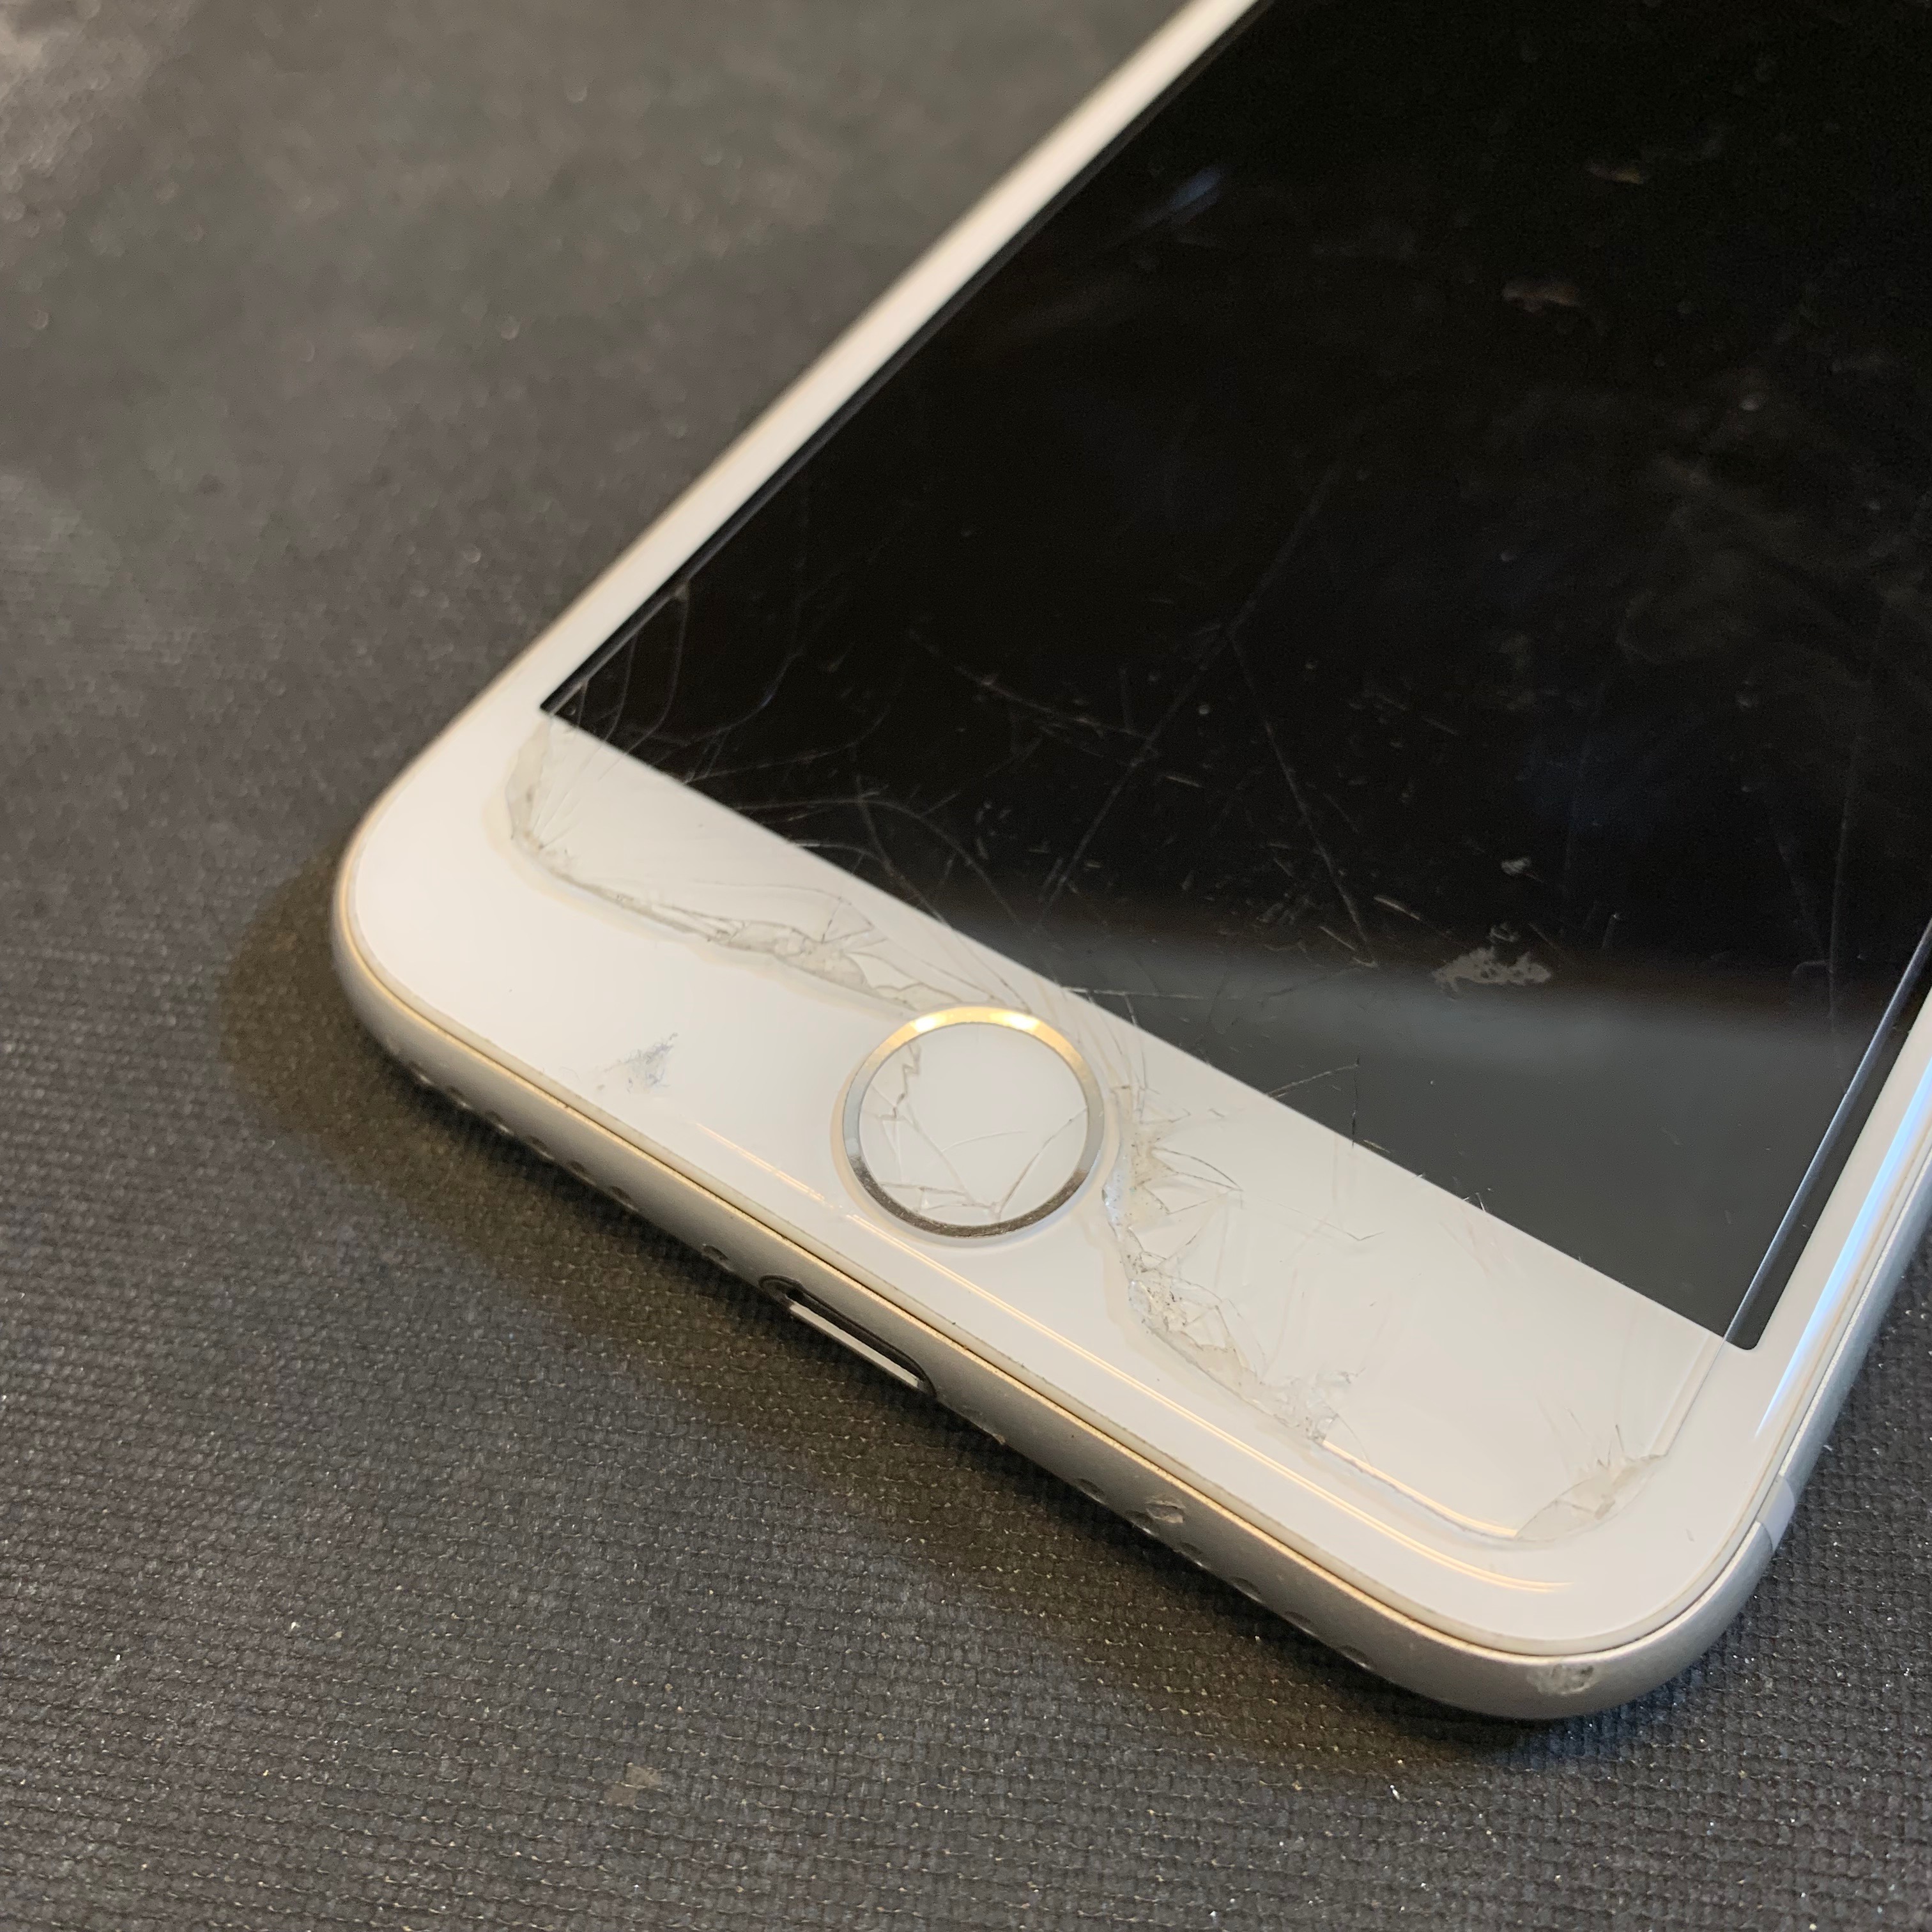 ホームボタンが破損したiPhone7